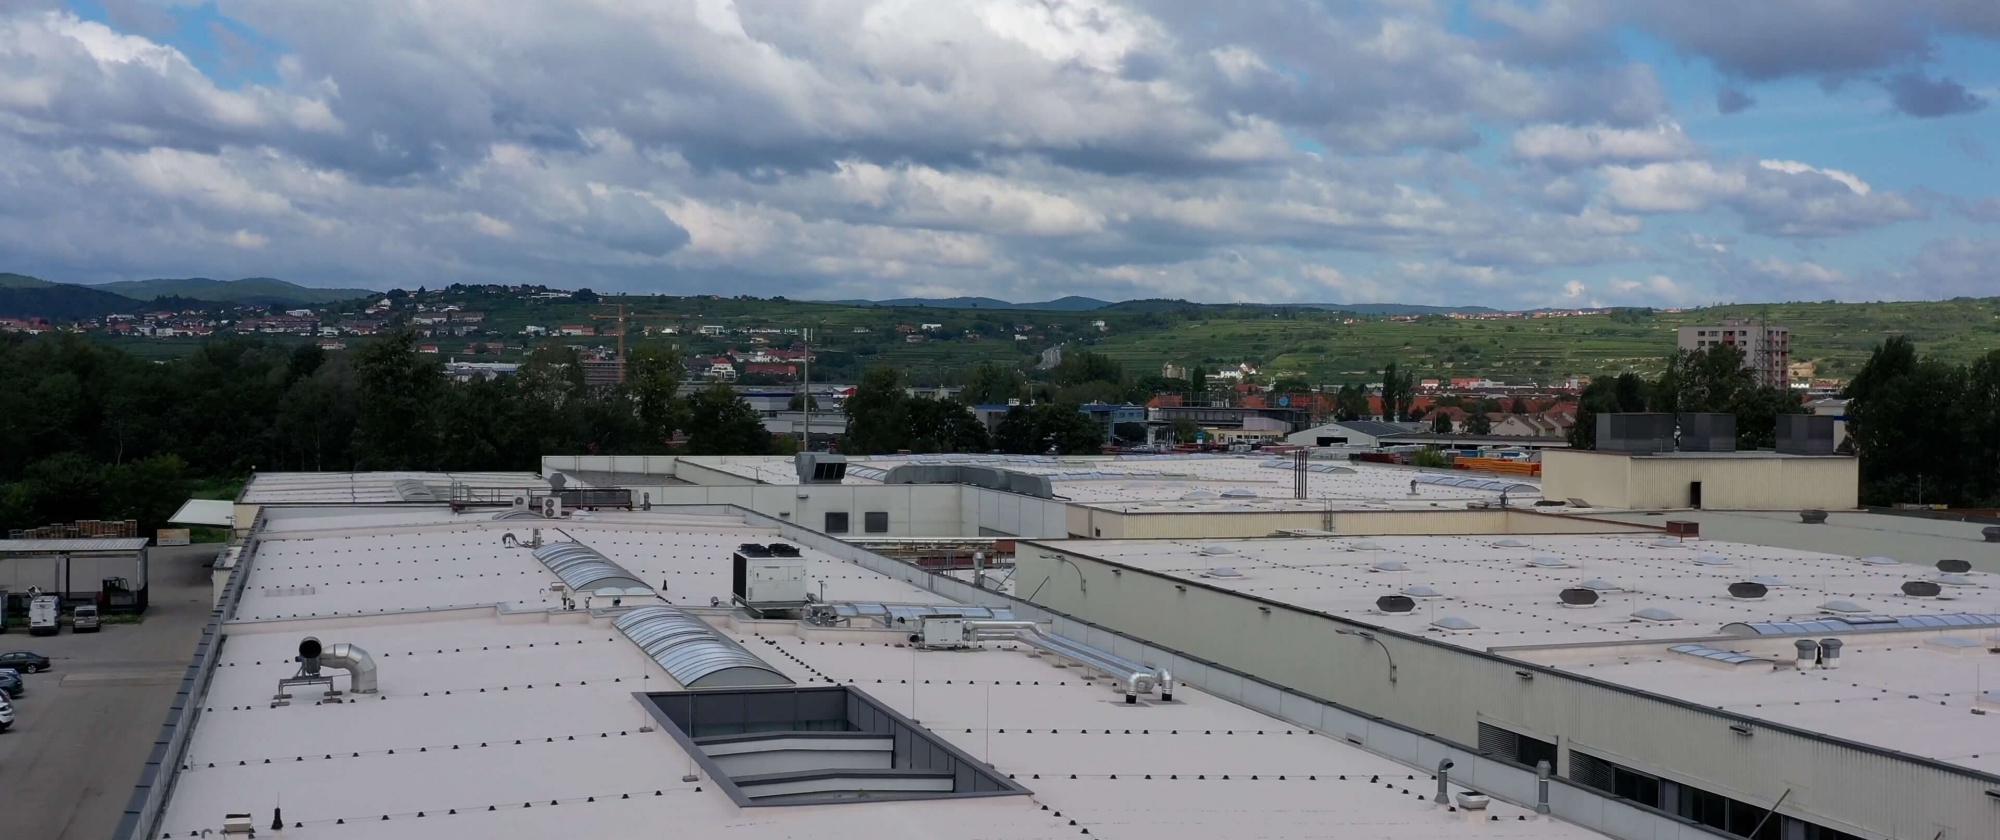 Blick über die ausgedehnten Dachflächen der DGK Hallen mit Aussicht auf Weinberge